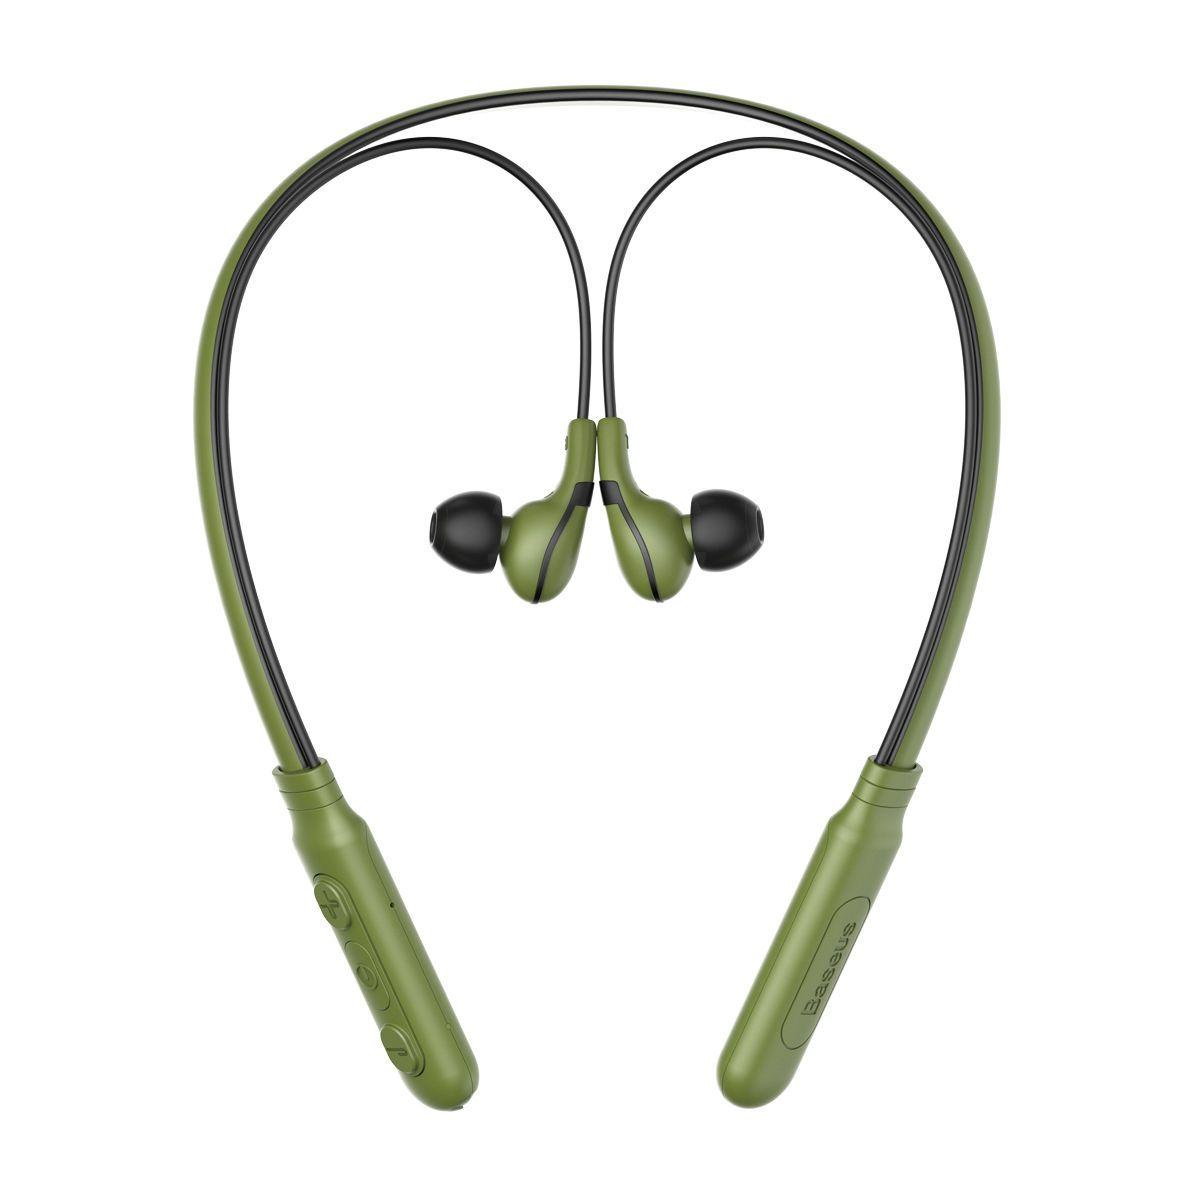 Baseus & Encok Bluetooth Earphone E16 green-black